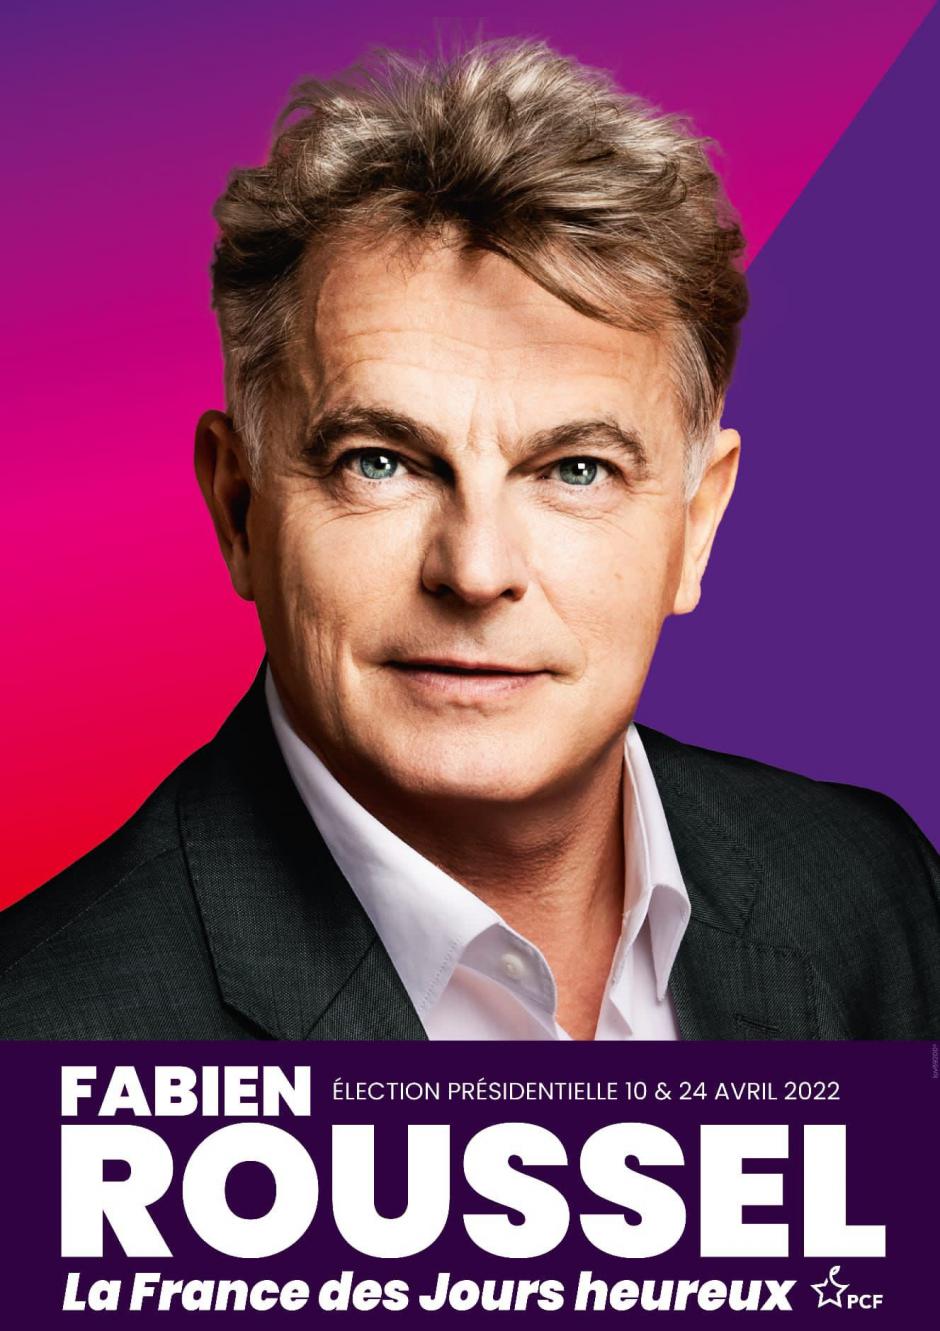 Affiche officielle de Fabien Roussel, candidat communiste à l'élection présidentielle 2022